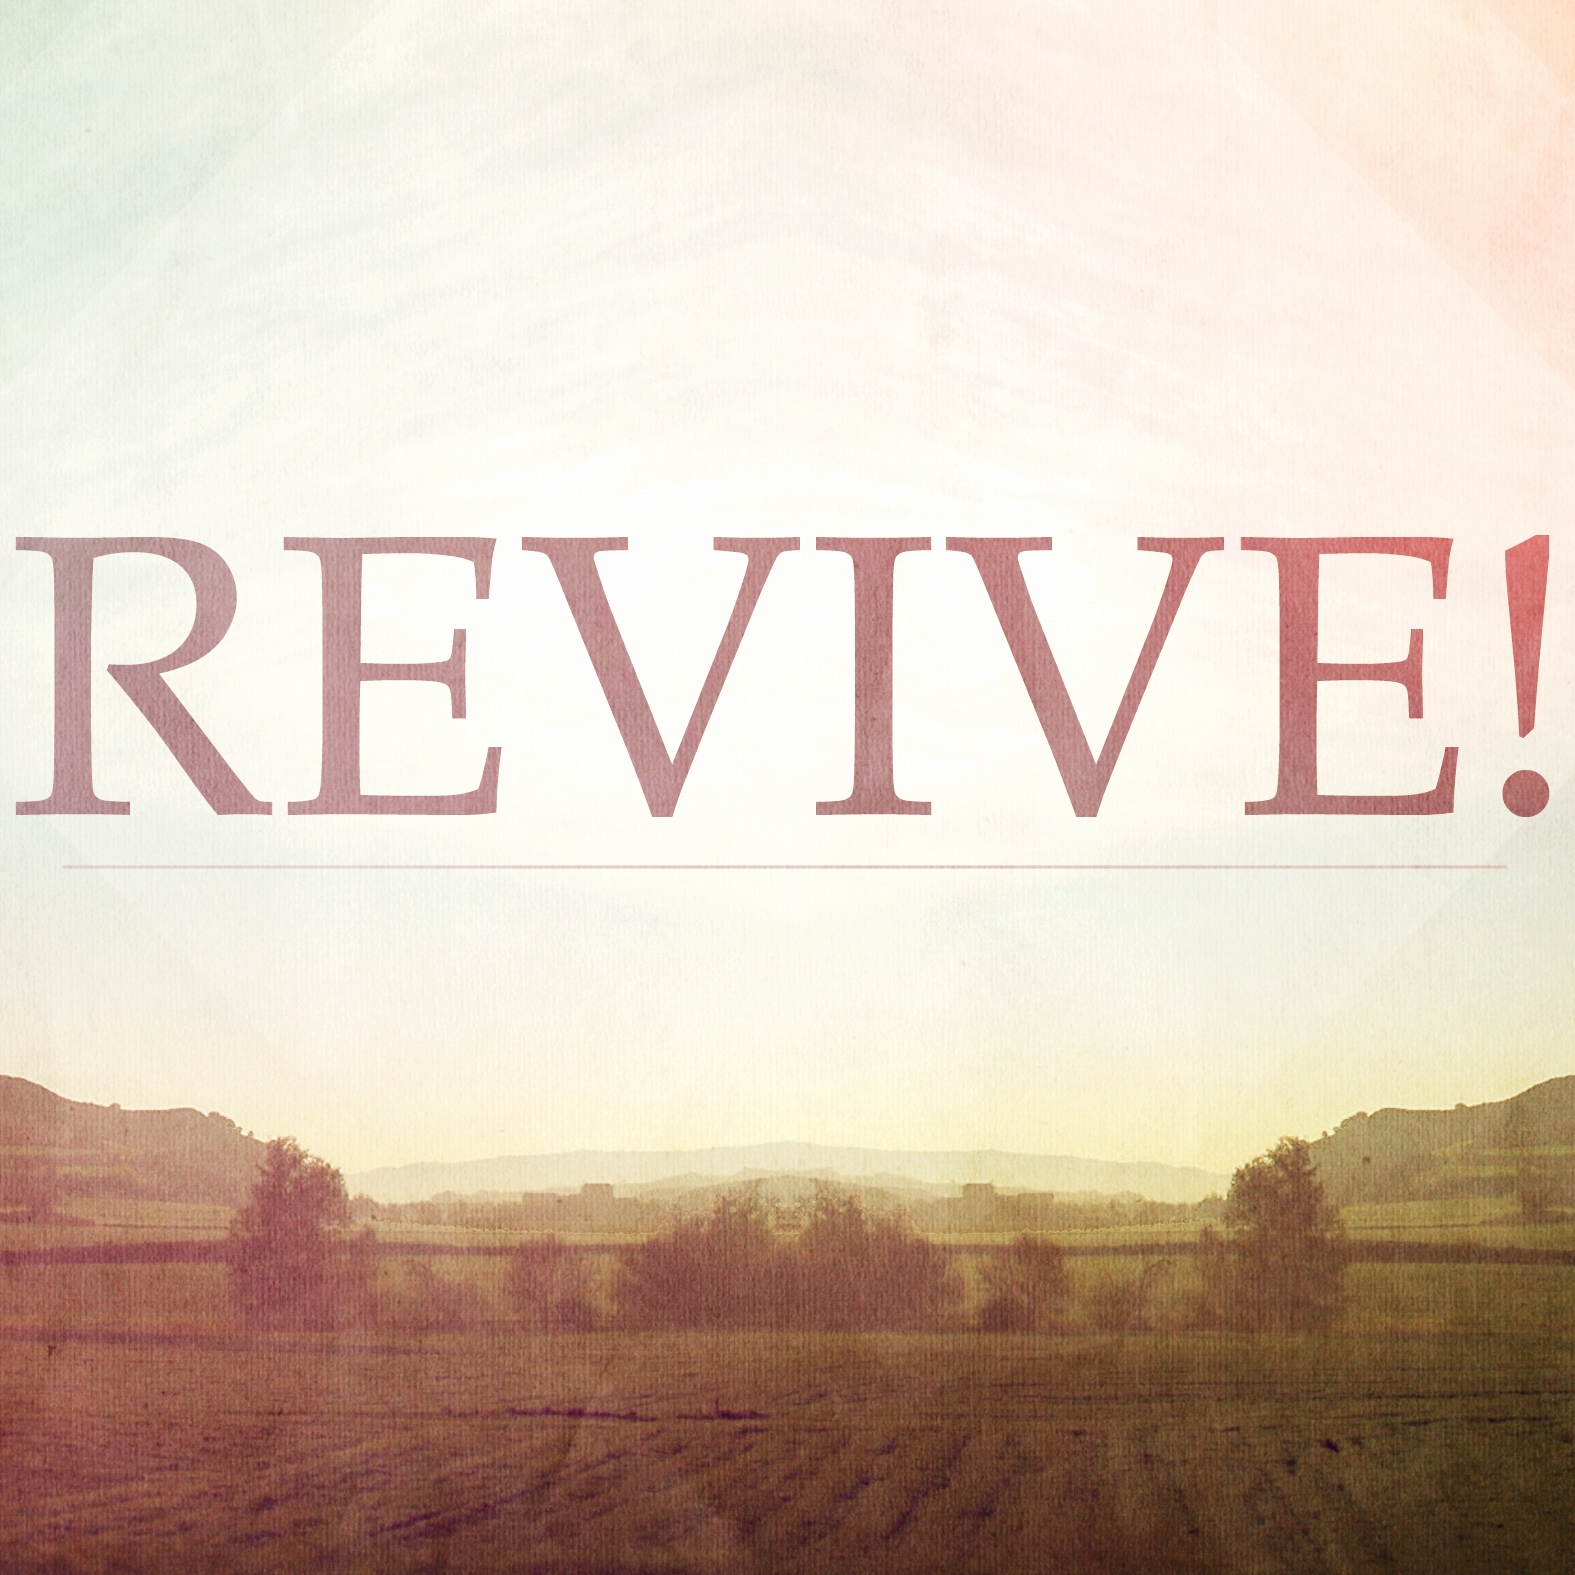 Revive! Part 3